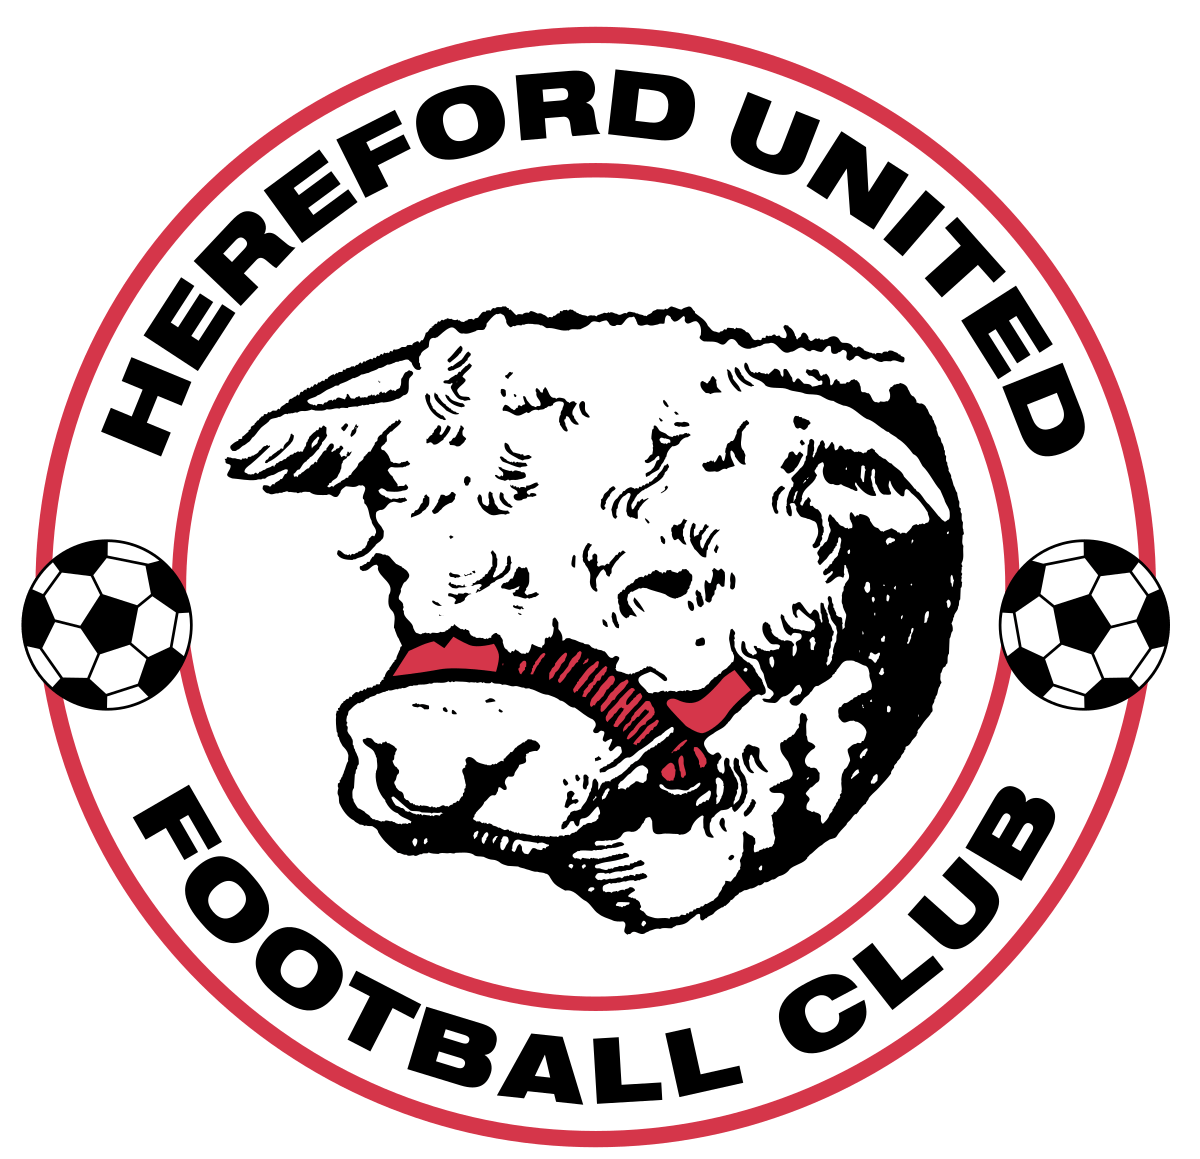 Hereford Logo - Hereford United F.C